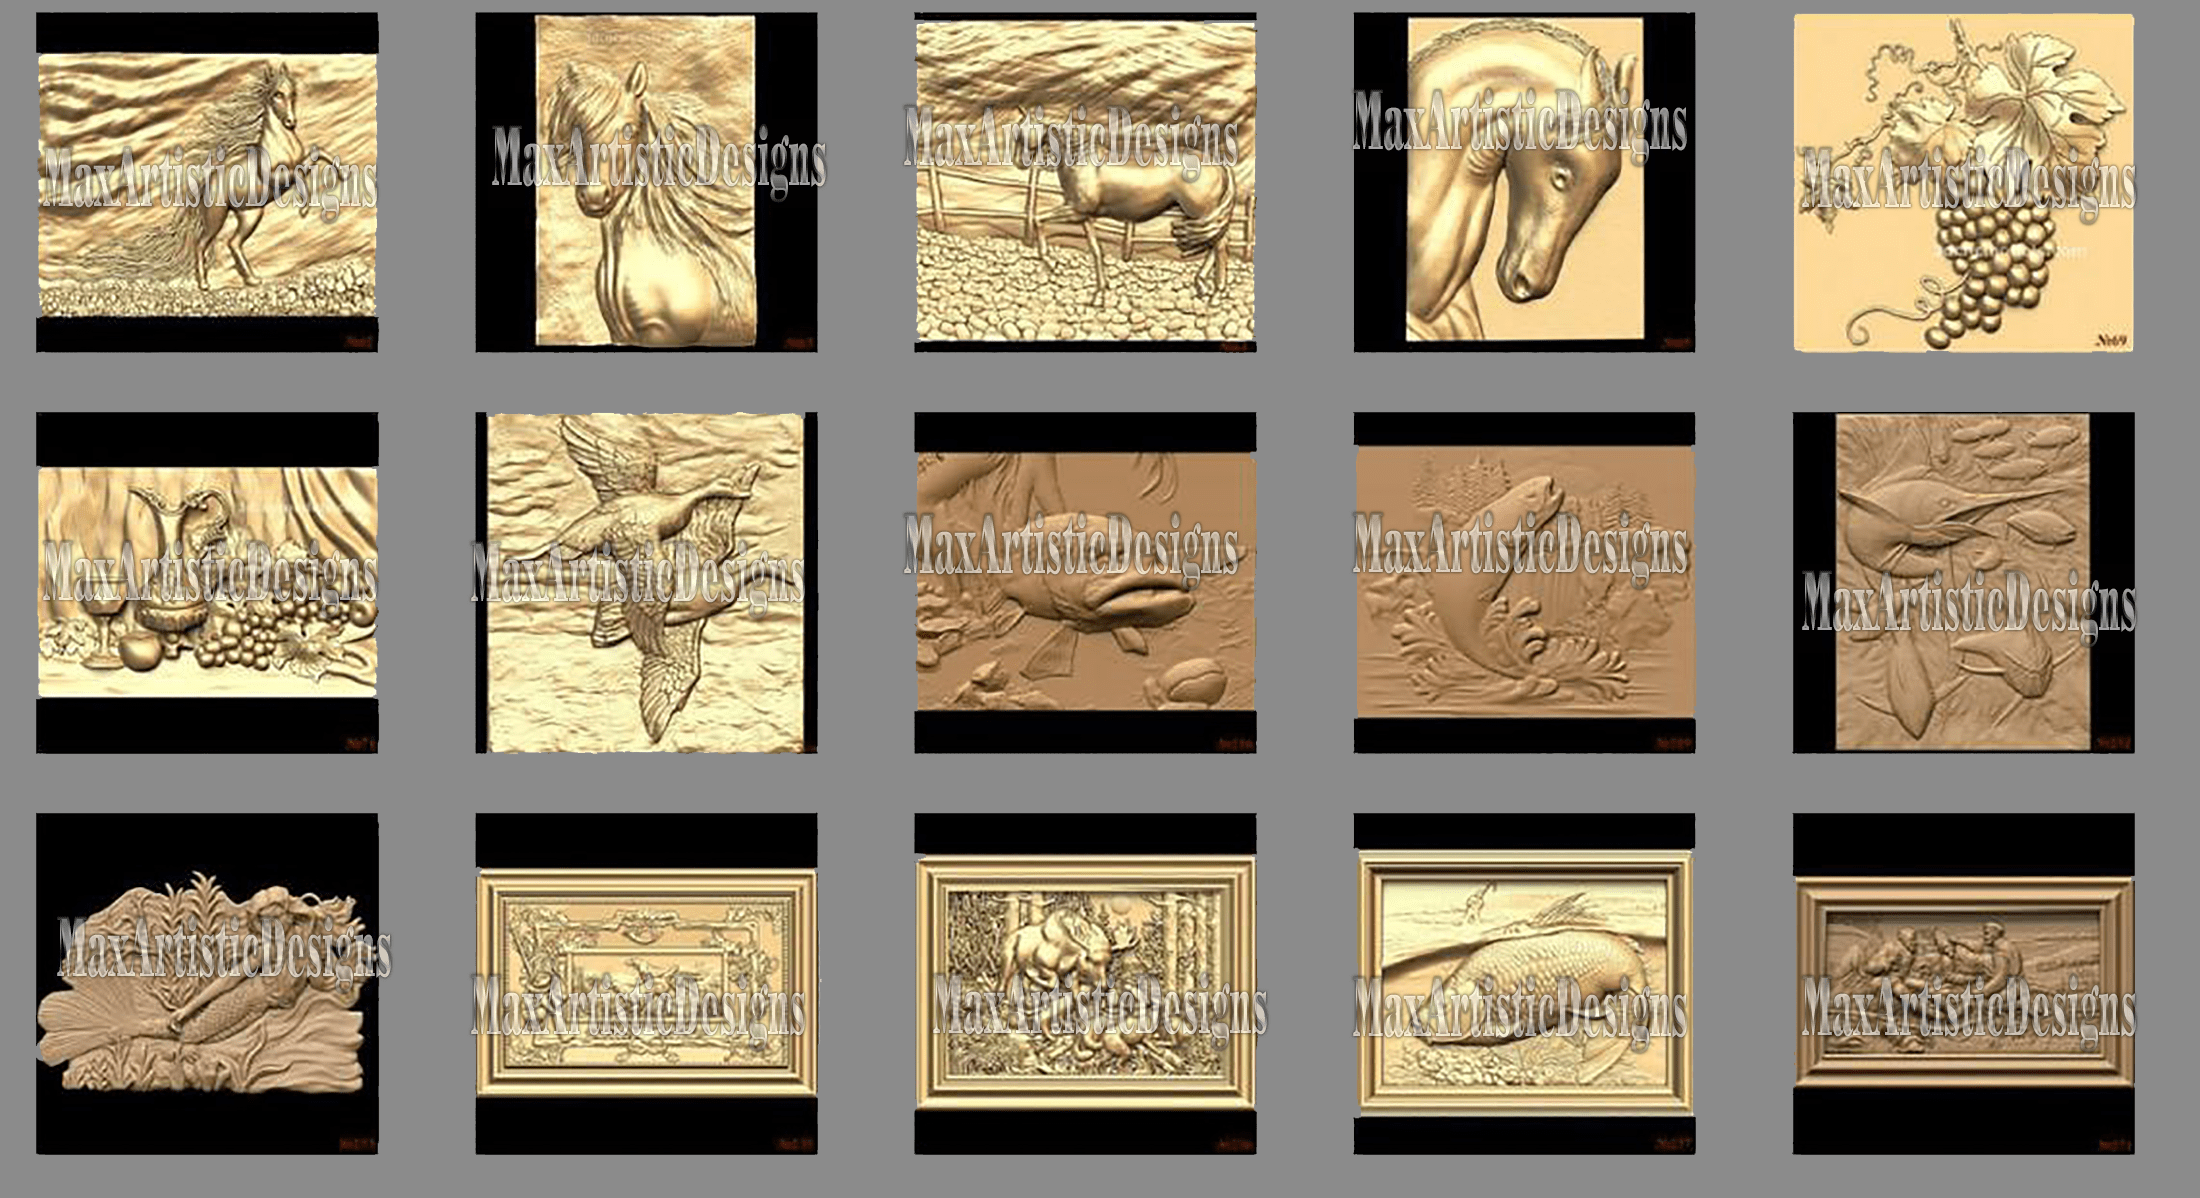 100 3d stl models – ” bas-relief collection ” for cnc artcam 3d printer aspire